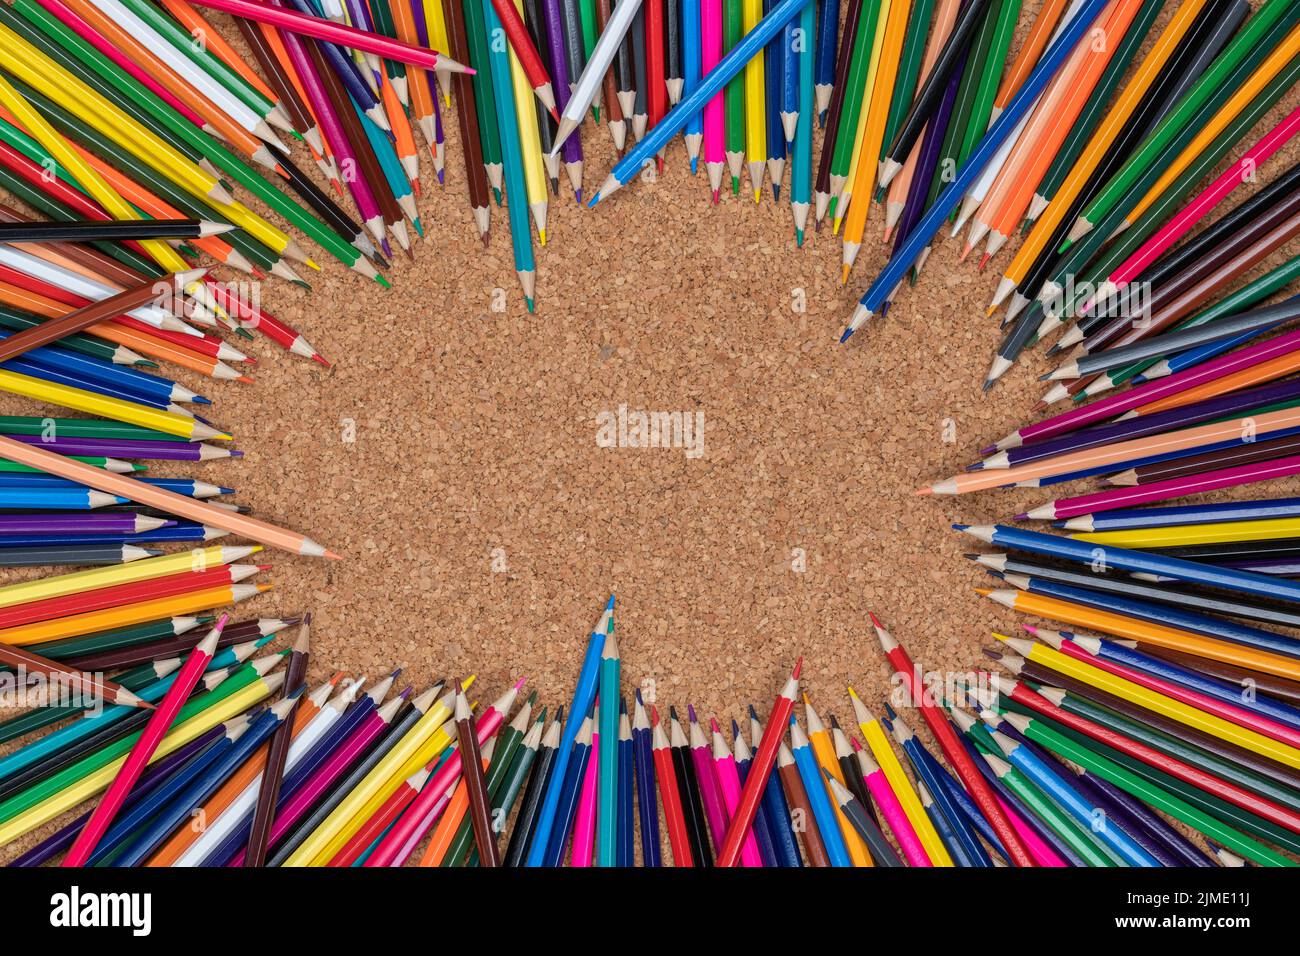 Hintergrundbild von Buntstiften auf einer Korkplatte Stockfoto